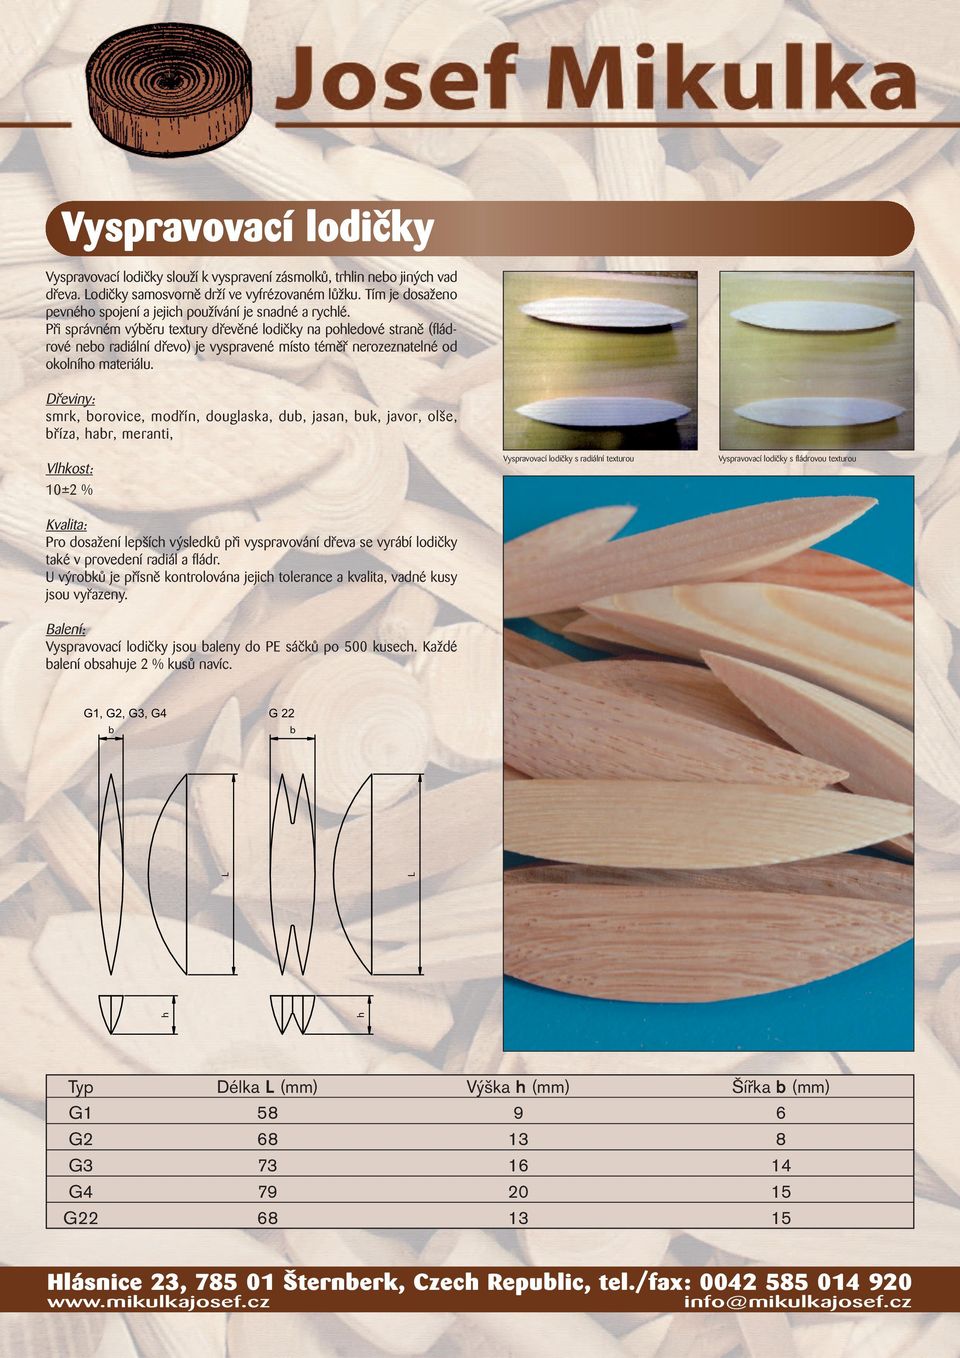 Při správném výběru textury dřevěné lodičky na poledové straně (fládrové nebo radiální dřevo) je vyspravené místo téměř nerozeznatelné od okolnío materiálu.